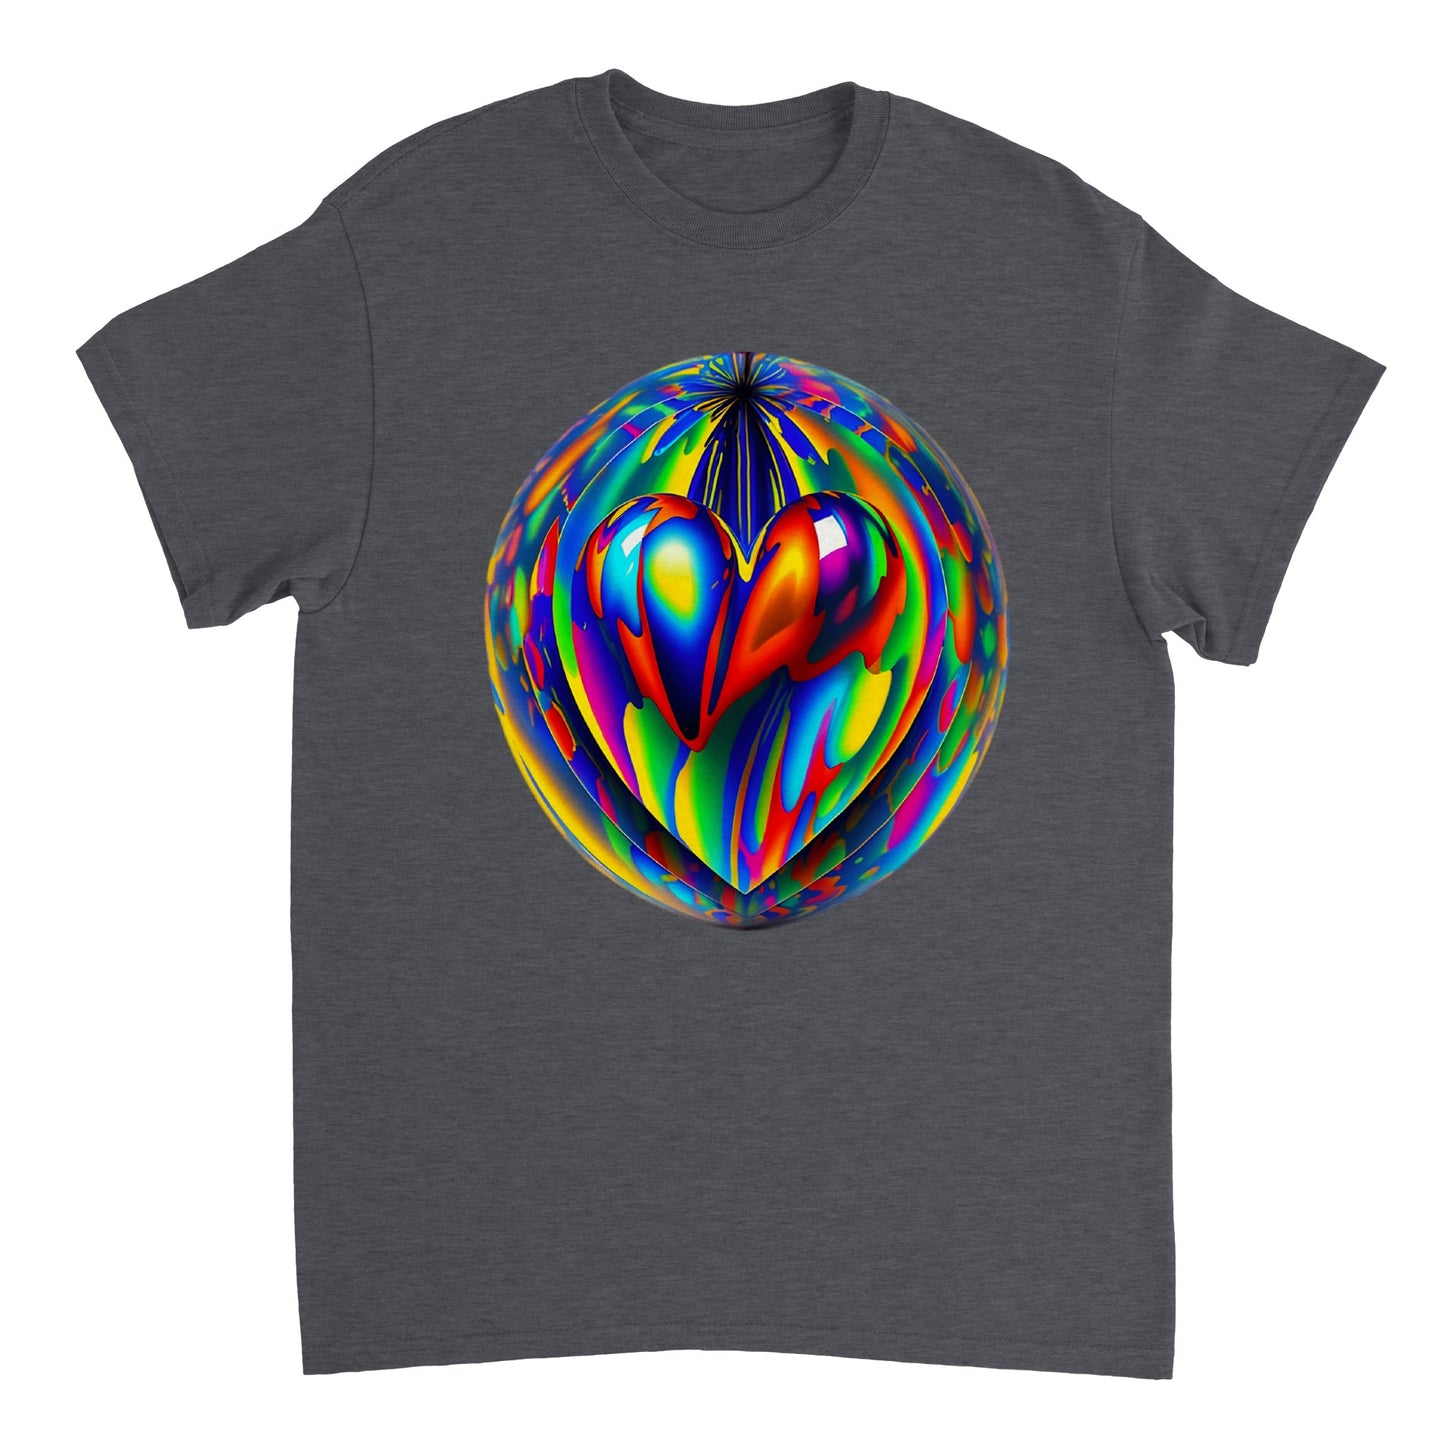 Love Heart - Heavyweight Unisex Crewneck T-shirt 53